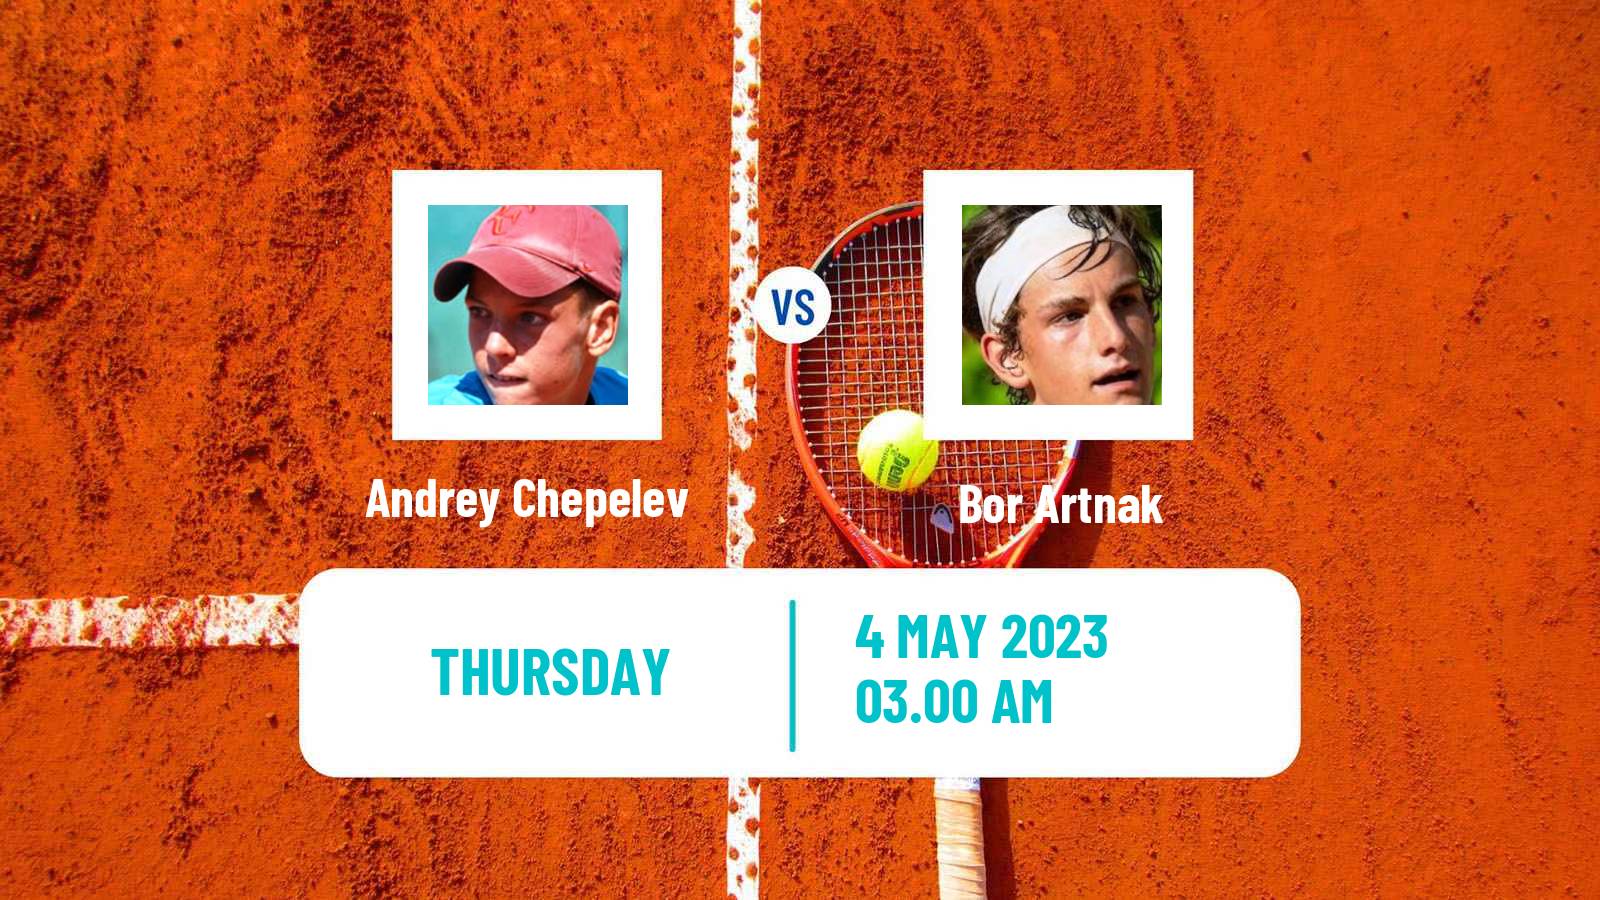 Tennis ITF Tournaments Andrey Chepelev - Bor Artnak